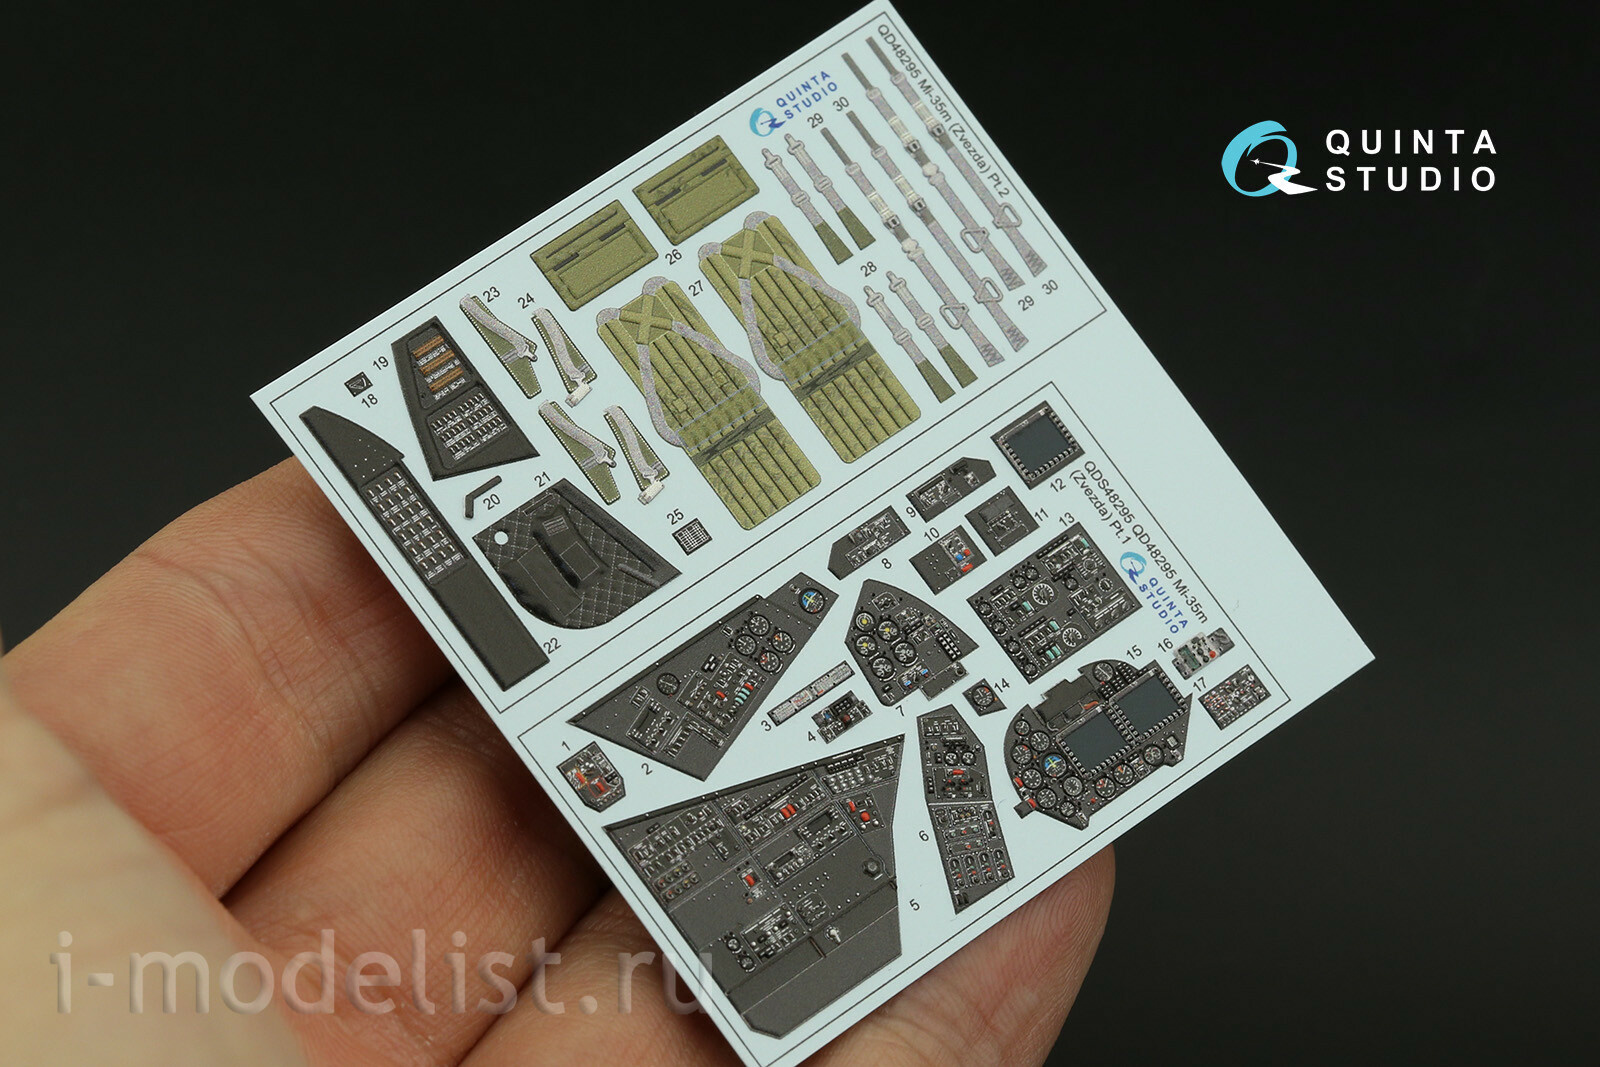 QDS-48295 Quinta Studio 1/48 3D декаль интерьера для модели фирмы 